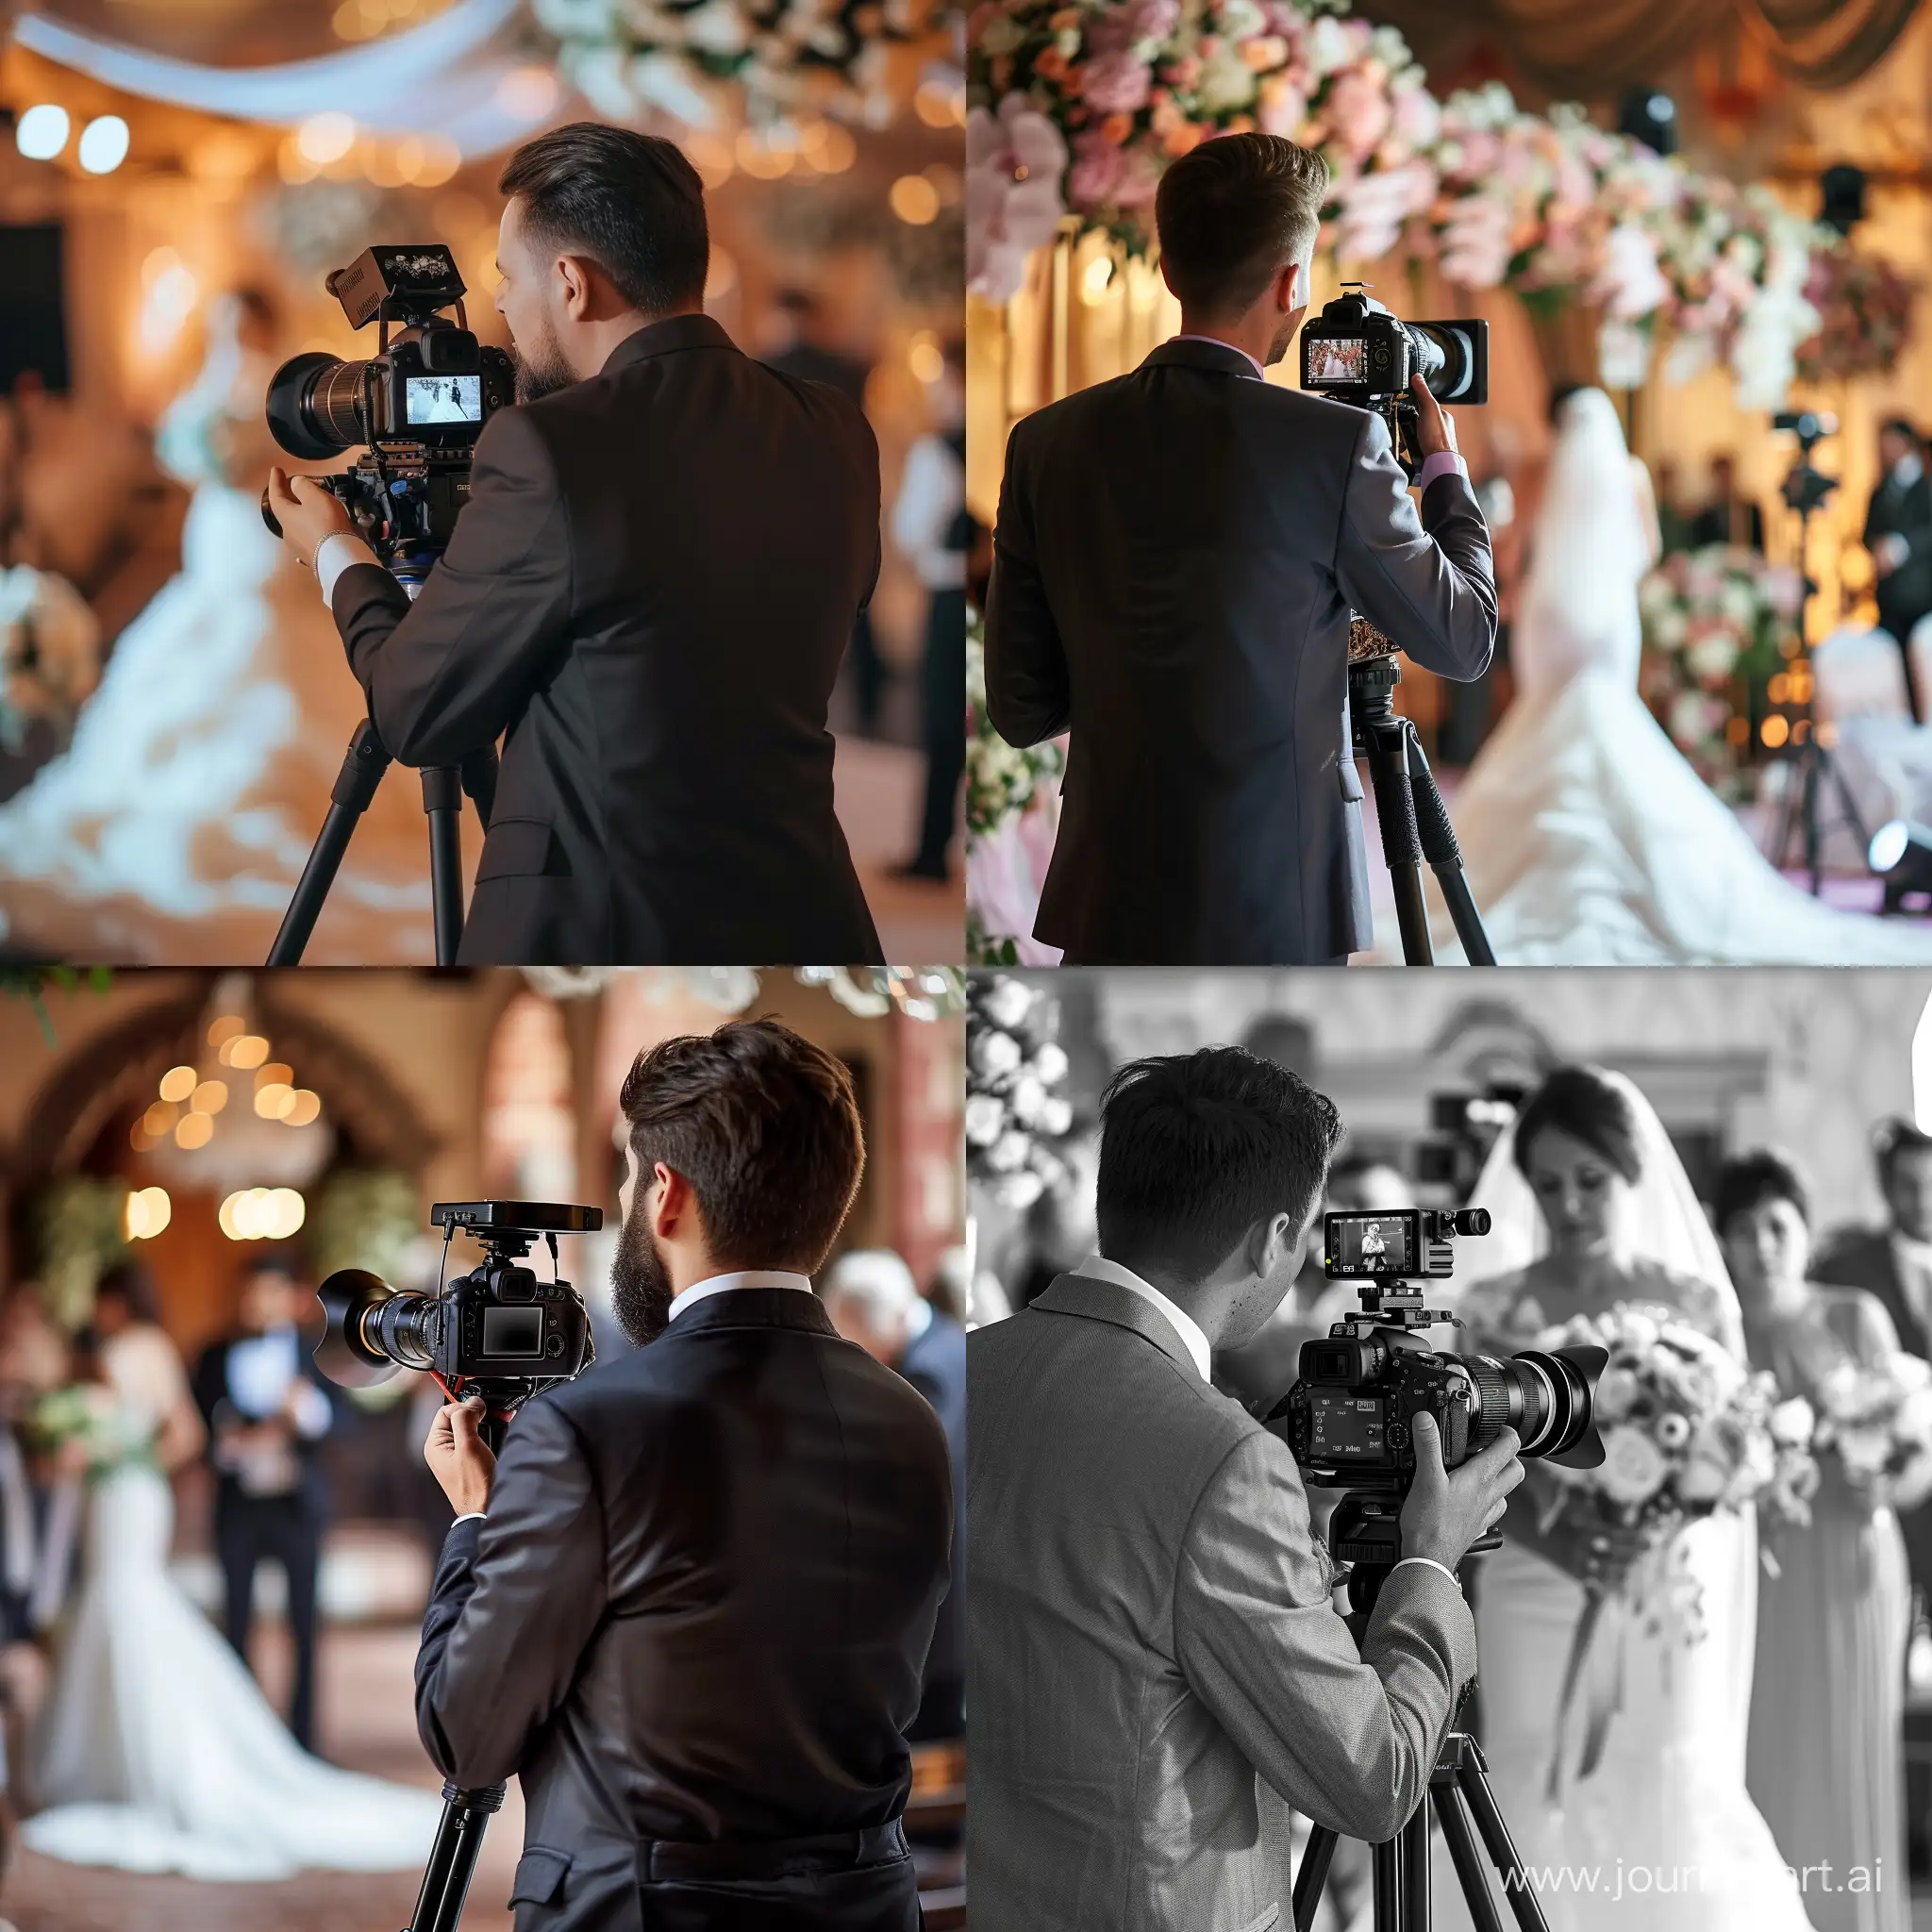 видеограф в элегантном костюме снимает свадьбу
